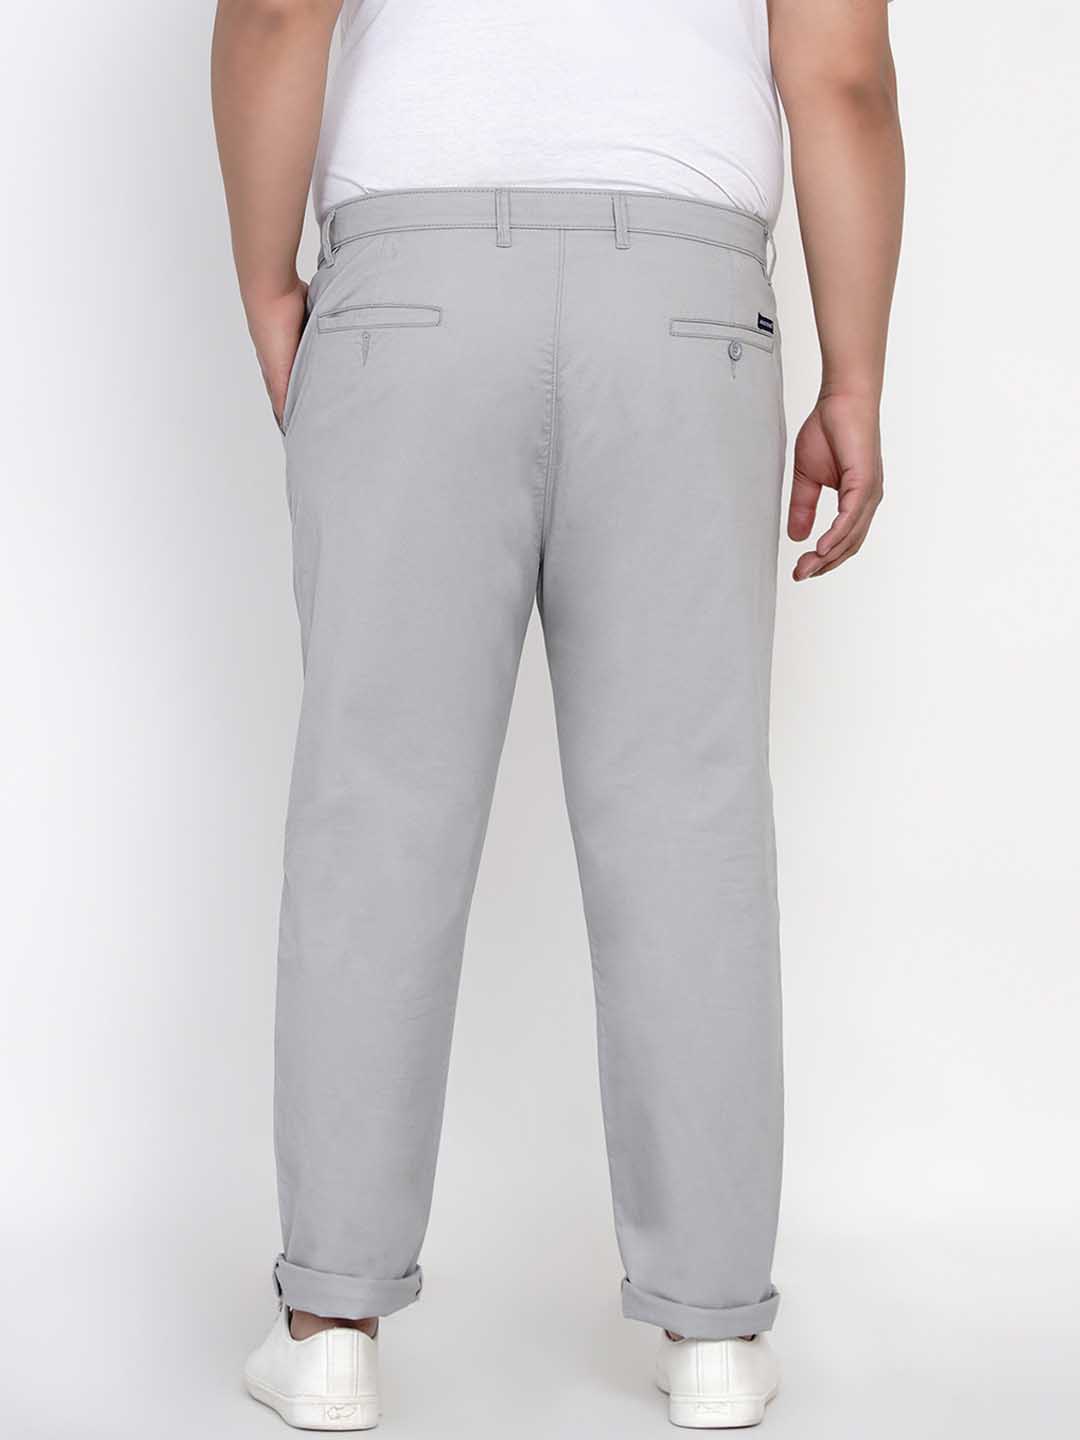 bottomwear/trousers/JPTR2195G/jptr2195g-4.jpg